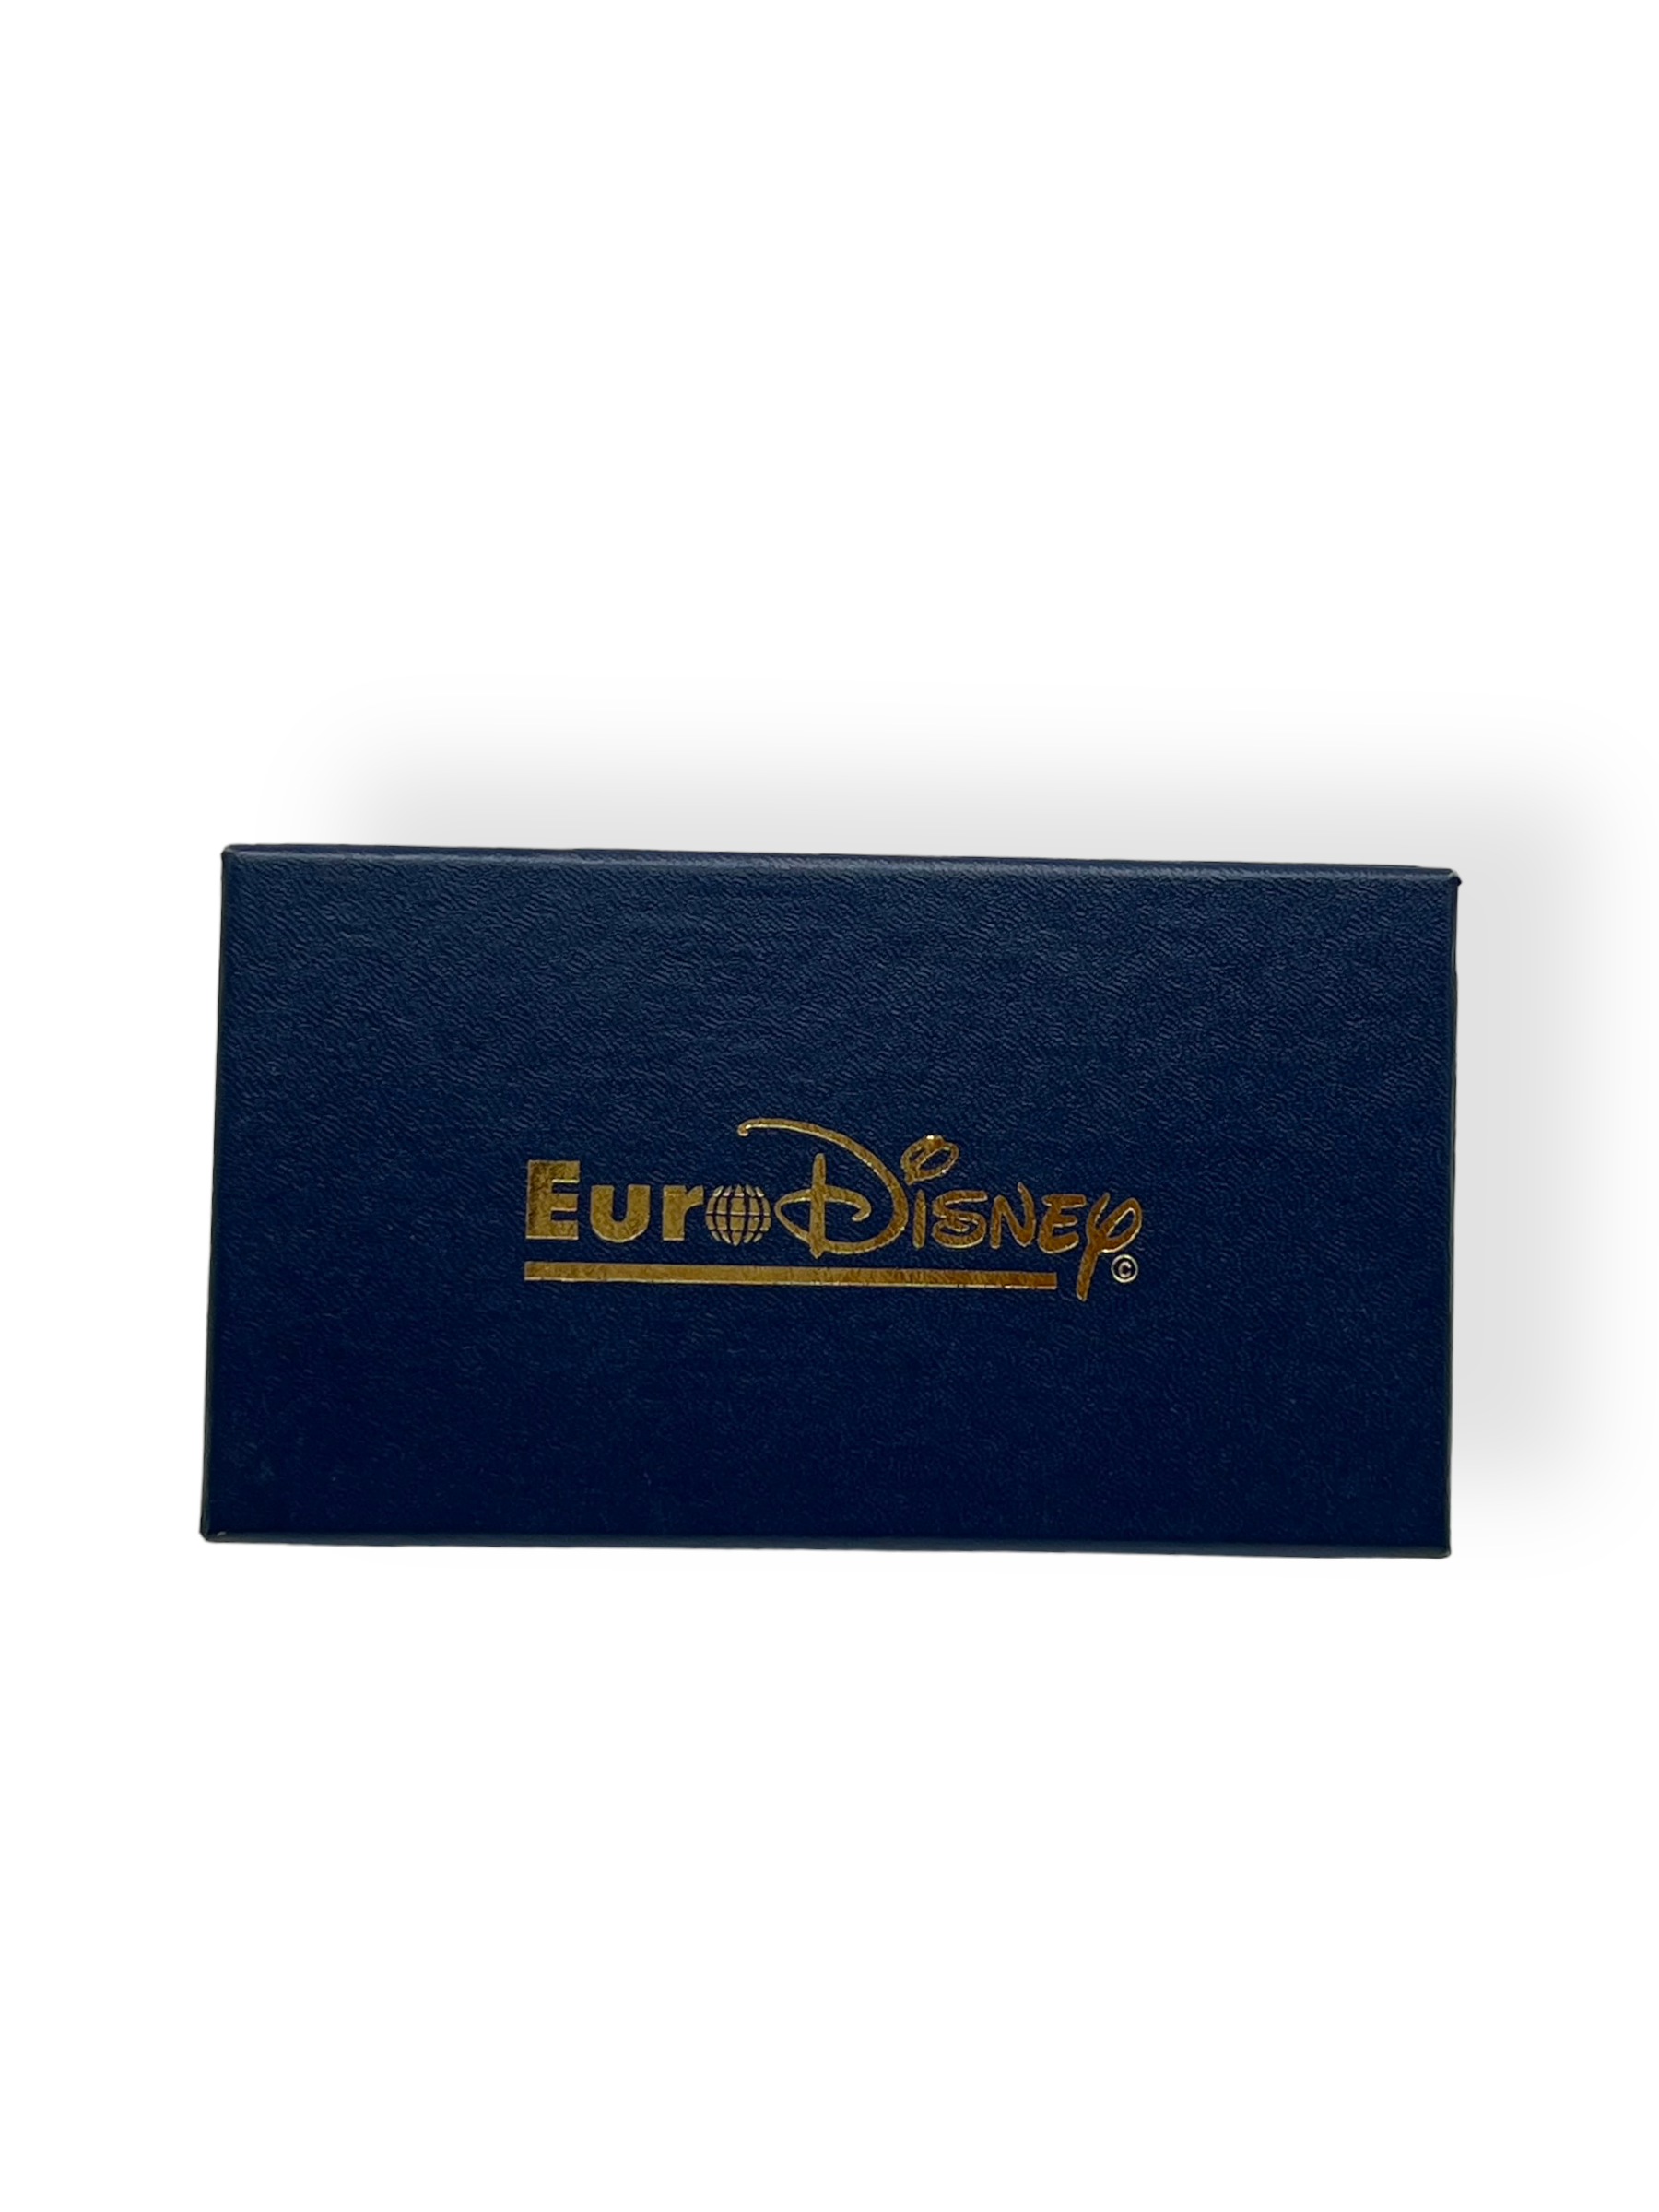 Euro Disney Opening Day 6 Pin Set